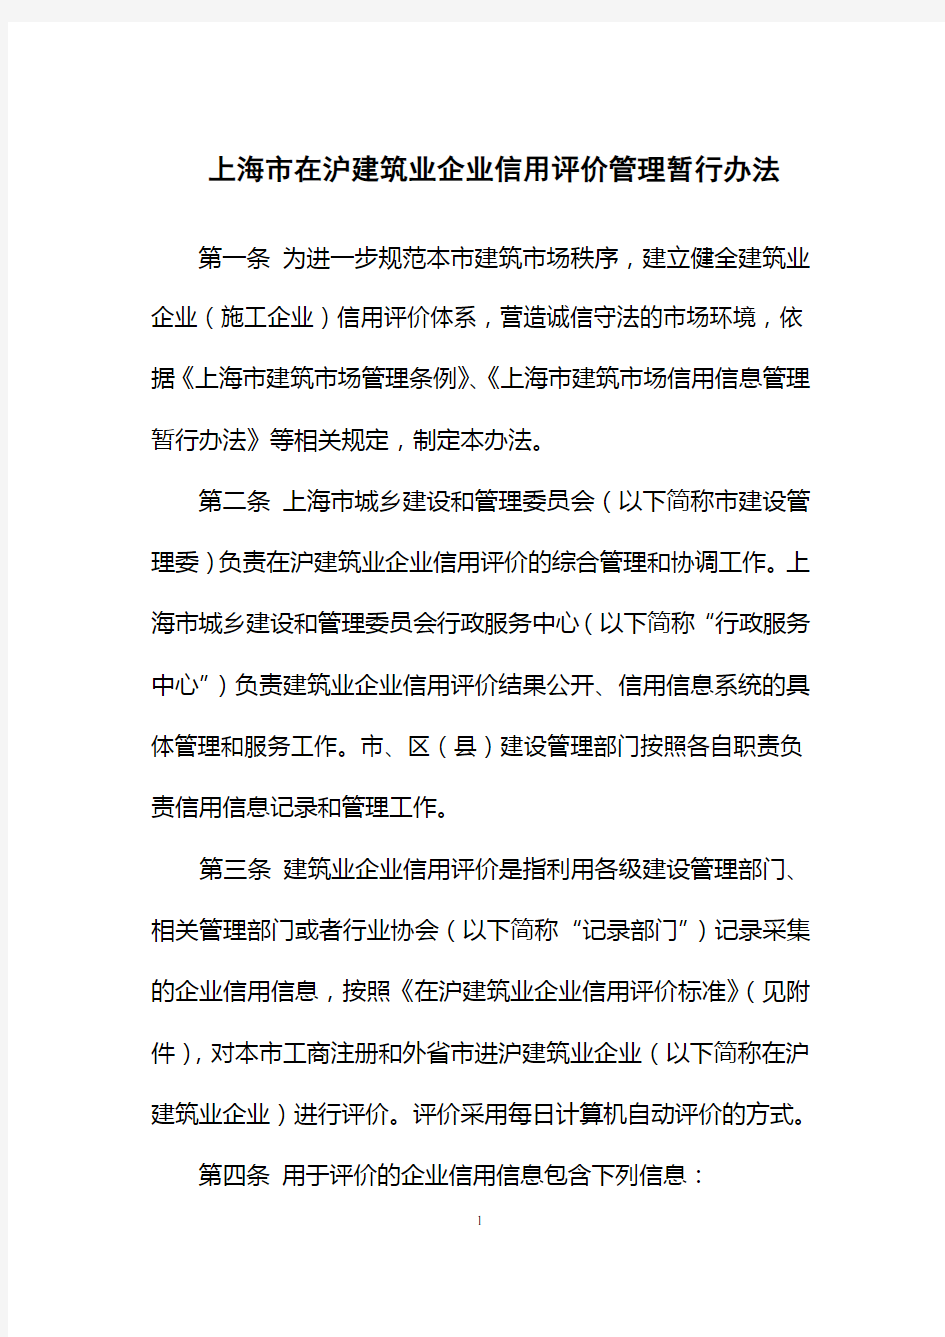 上海在沪建筑业企业信用评价管理暂行办法.doc